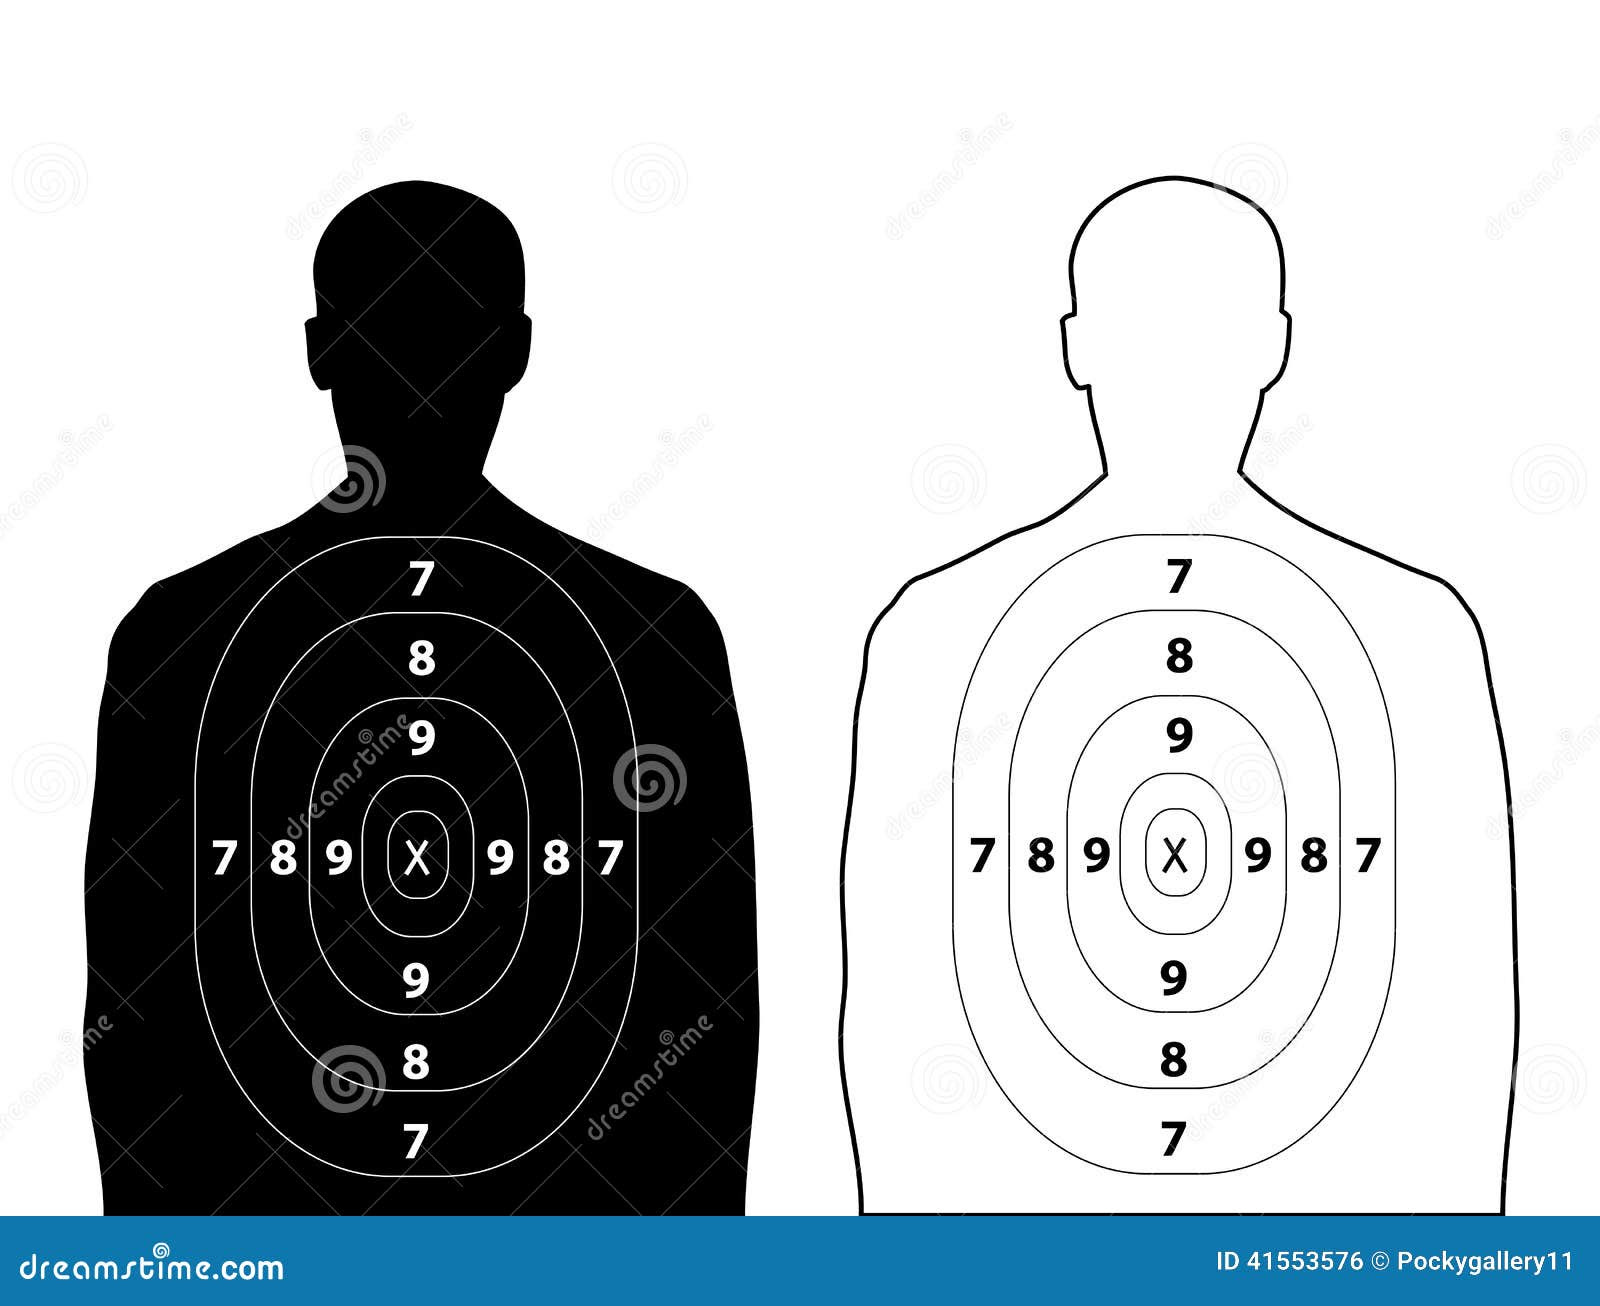 Human Printable Shooting Targets